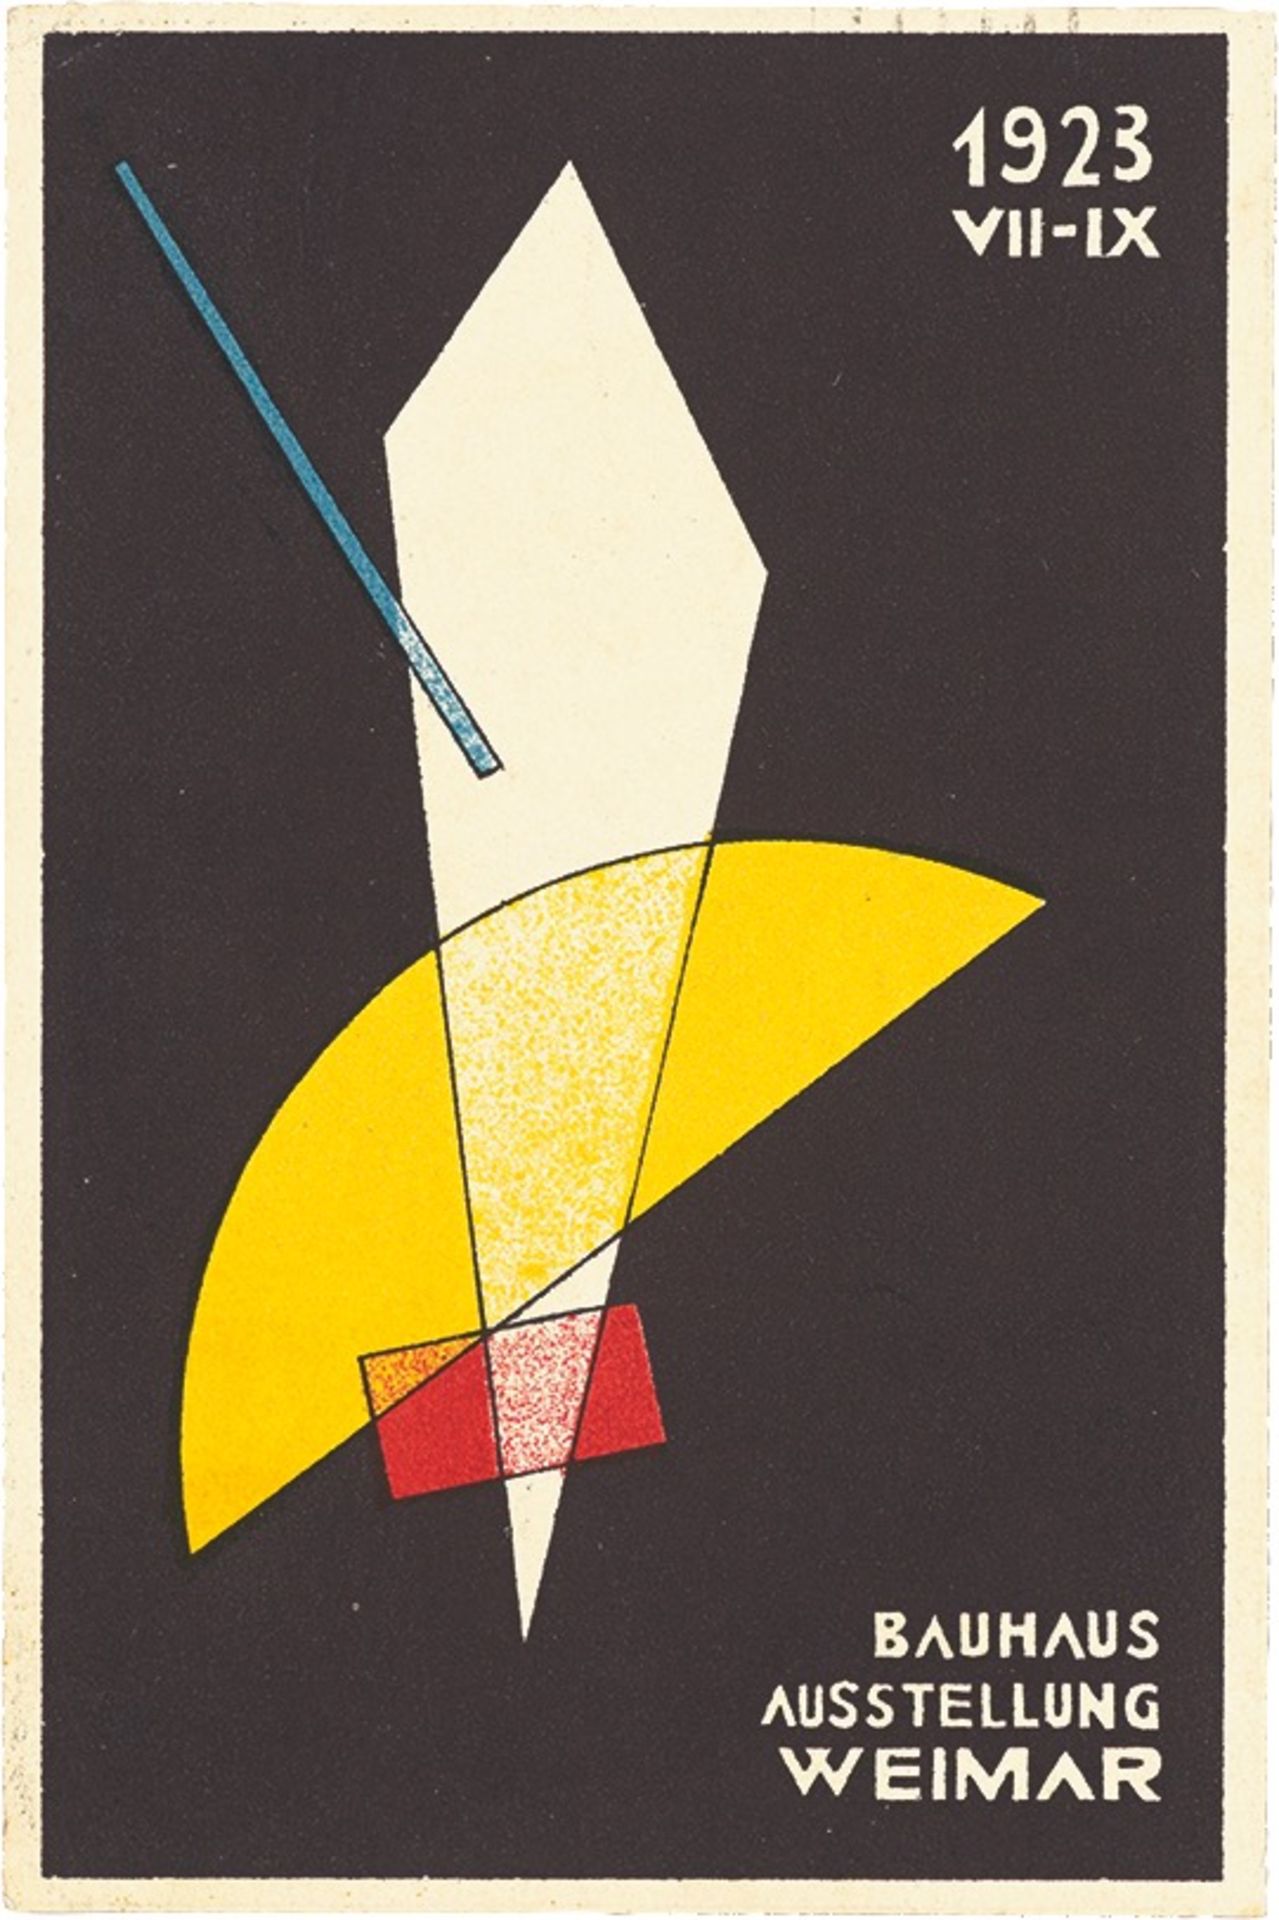 Bauhaus. ”Ausstellung Weimar 1923” – 20 postcards by various Bauhaus artists. 1923 - Image 7 of 20